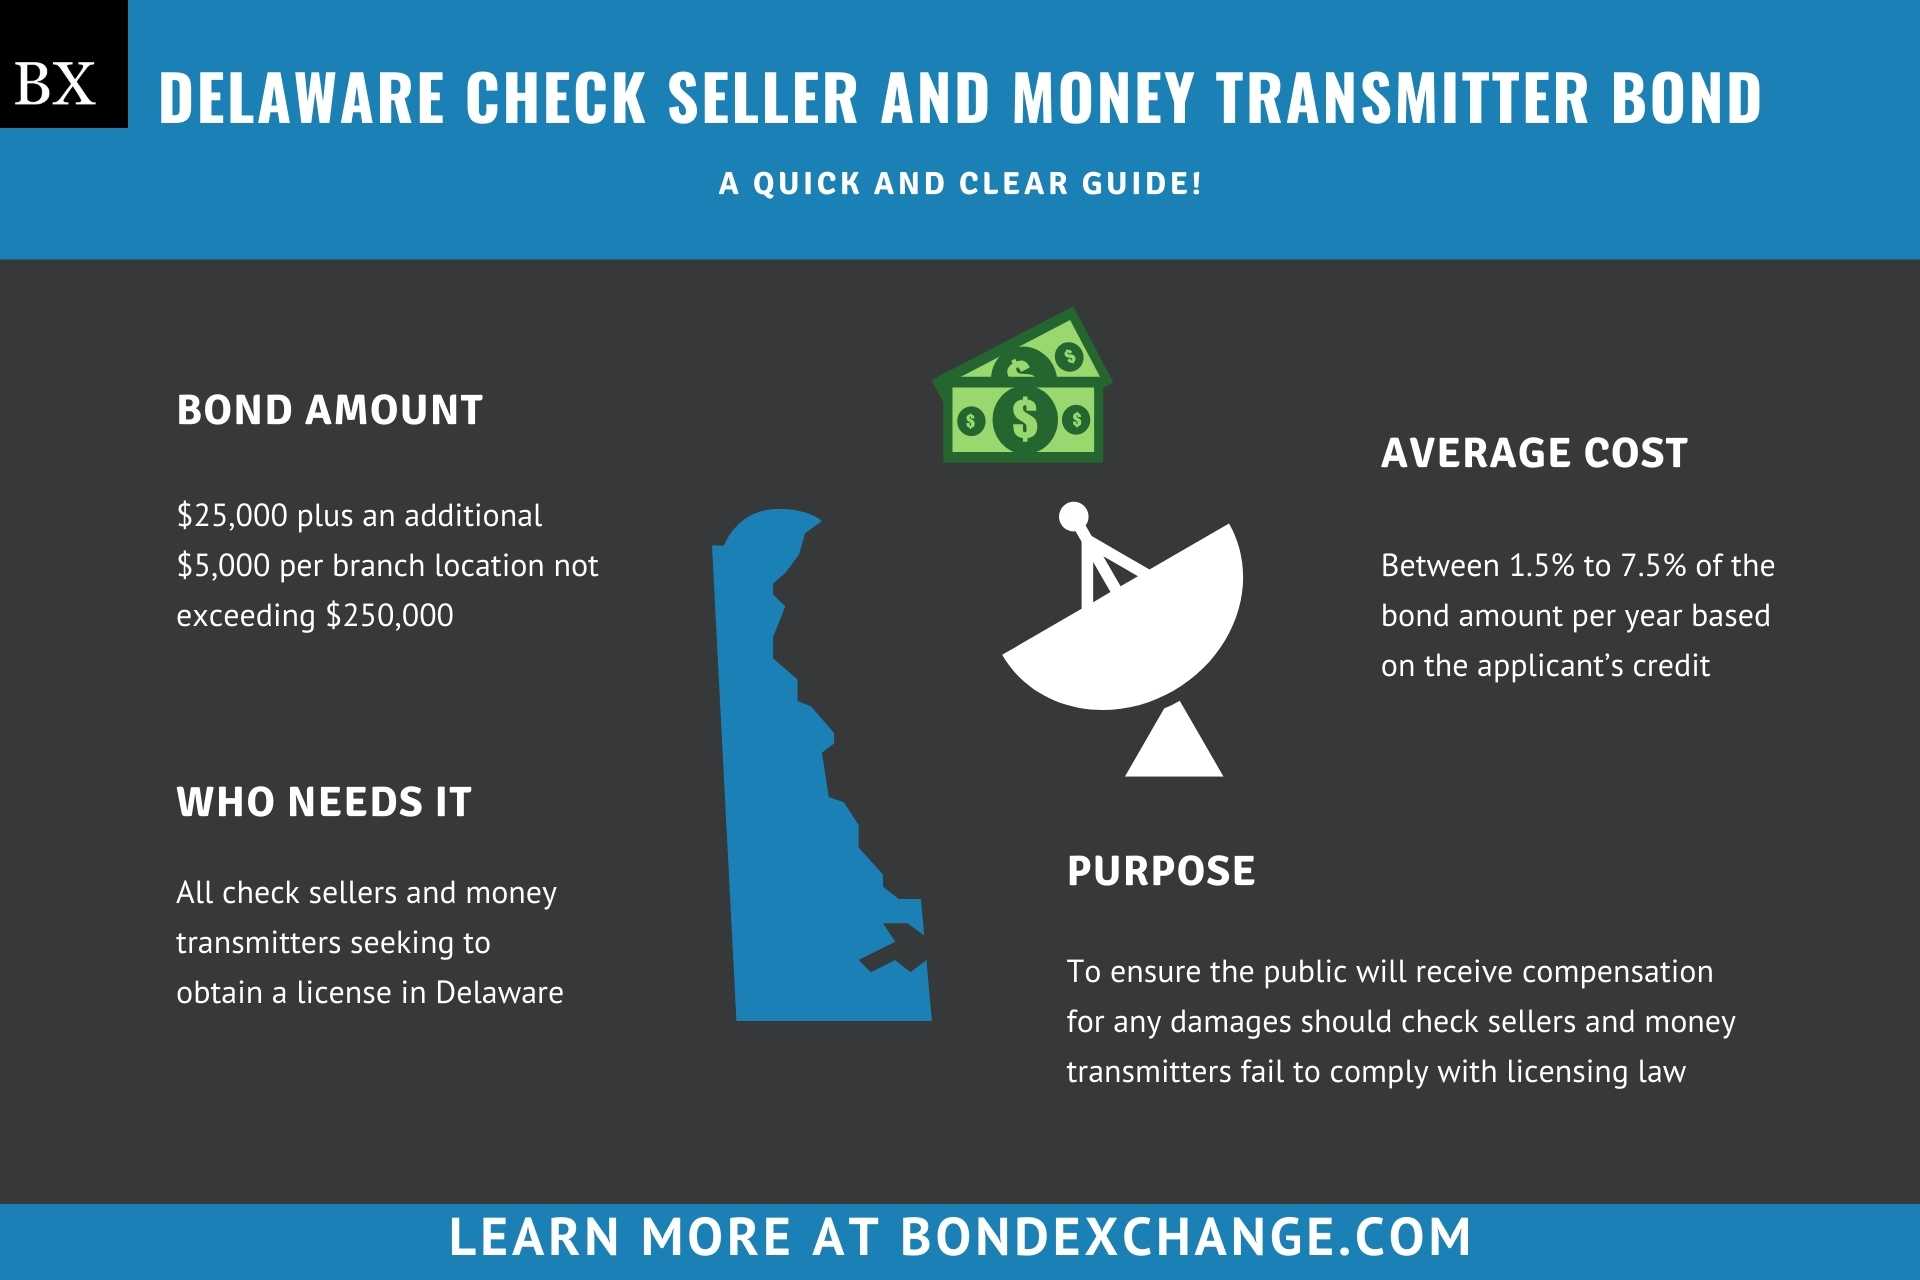 Delaware Check Seller and Money Transmitter Bond